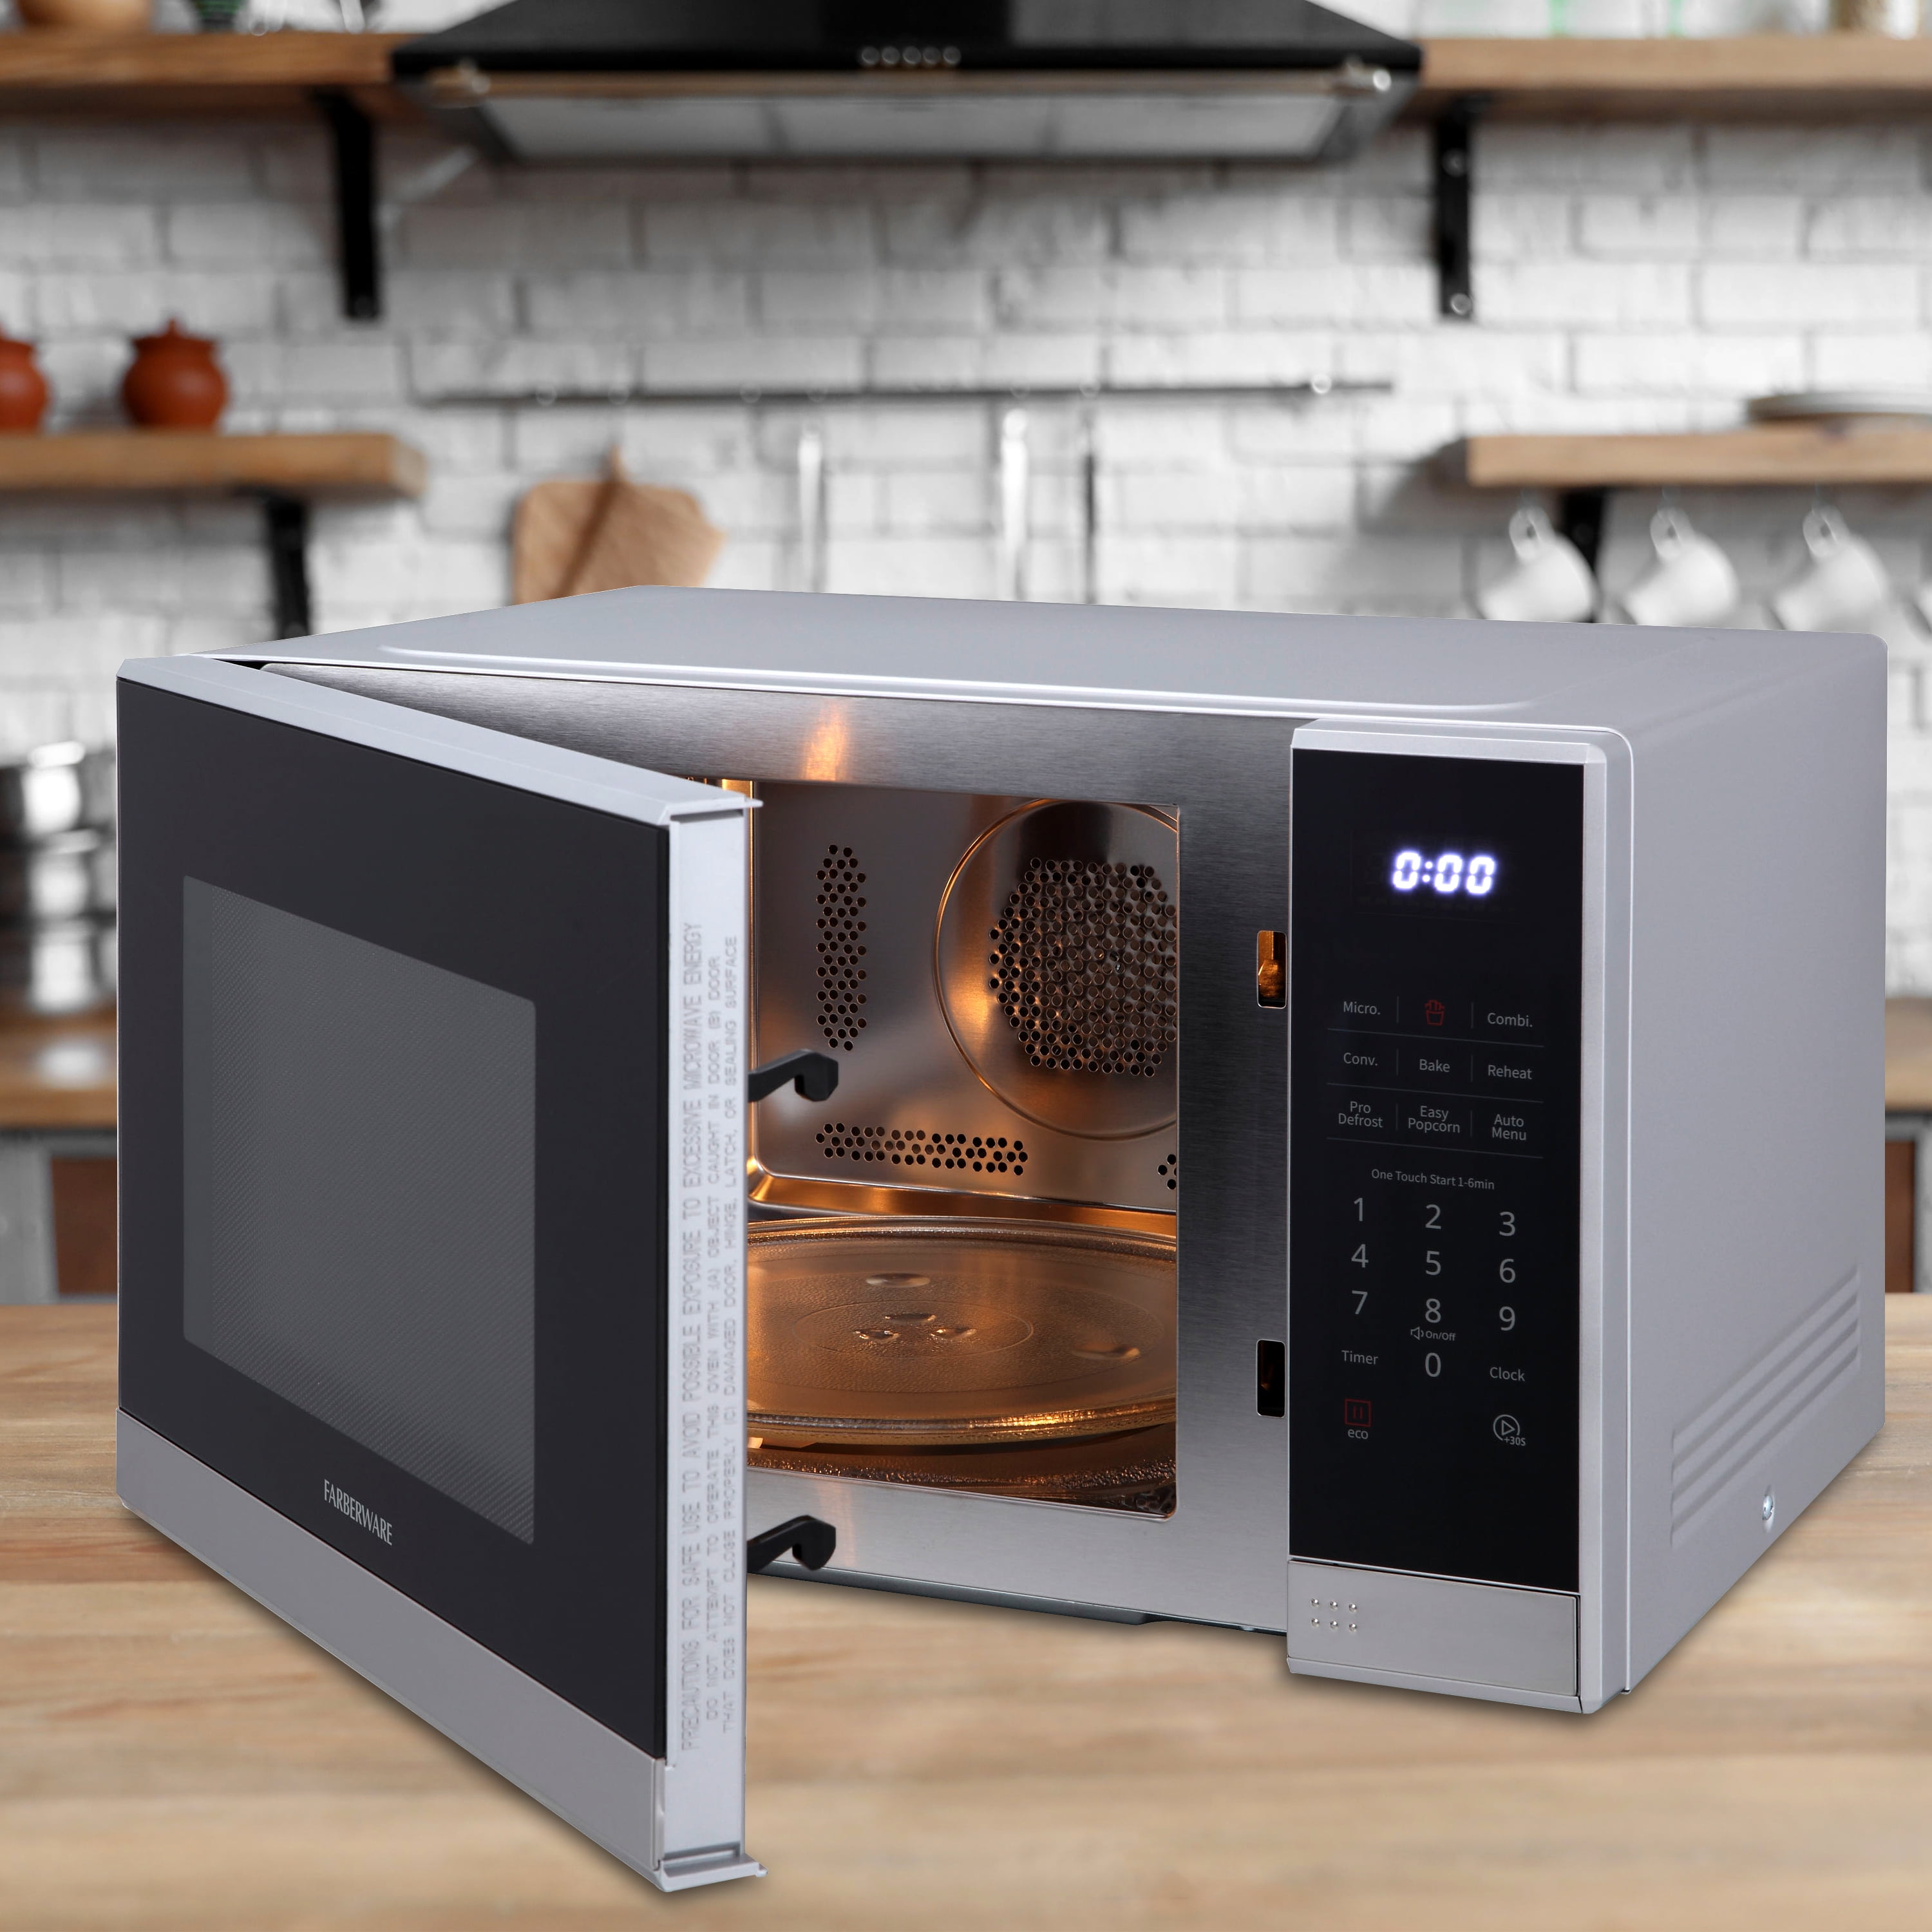  Farberware Countertop Air Fryer Microwave, 1.3 Cu.Ft